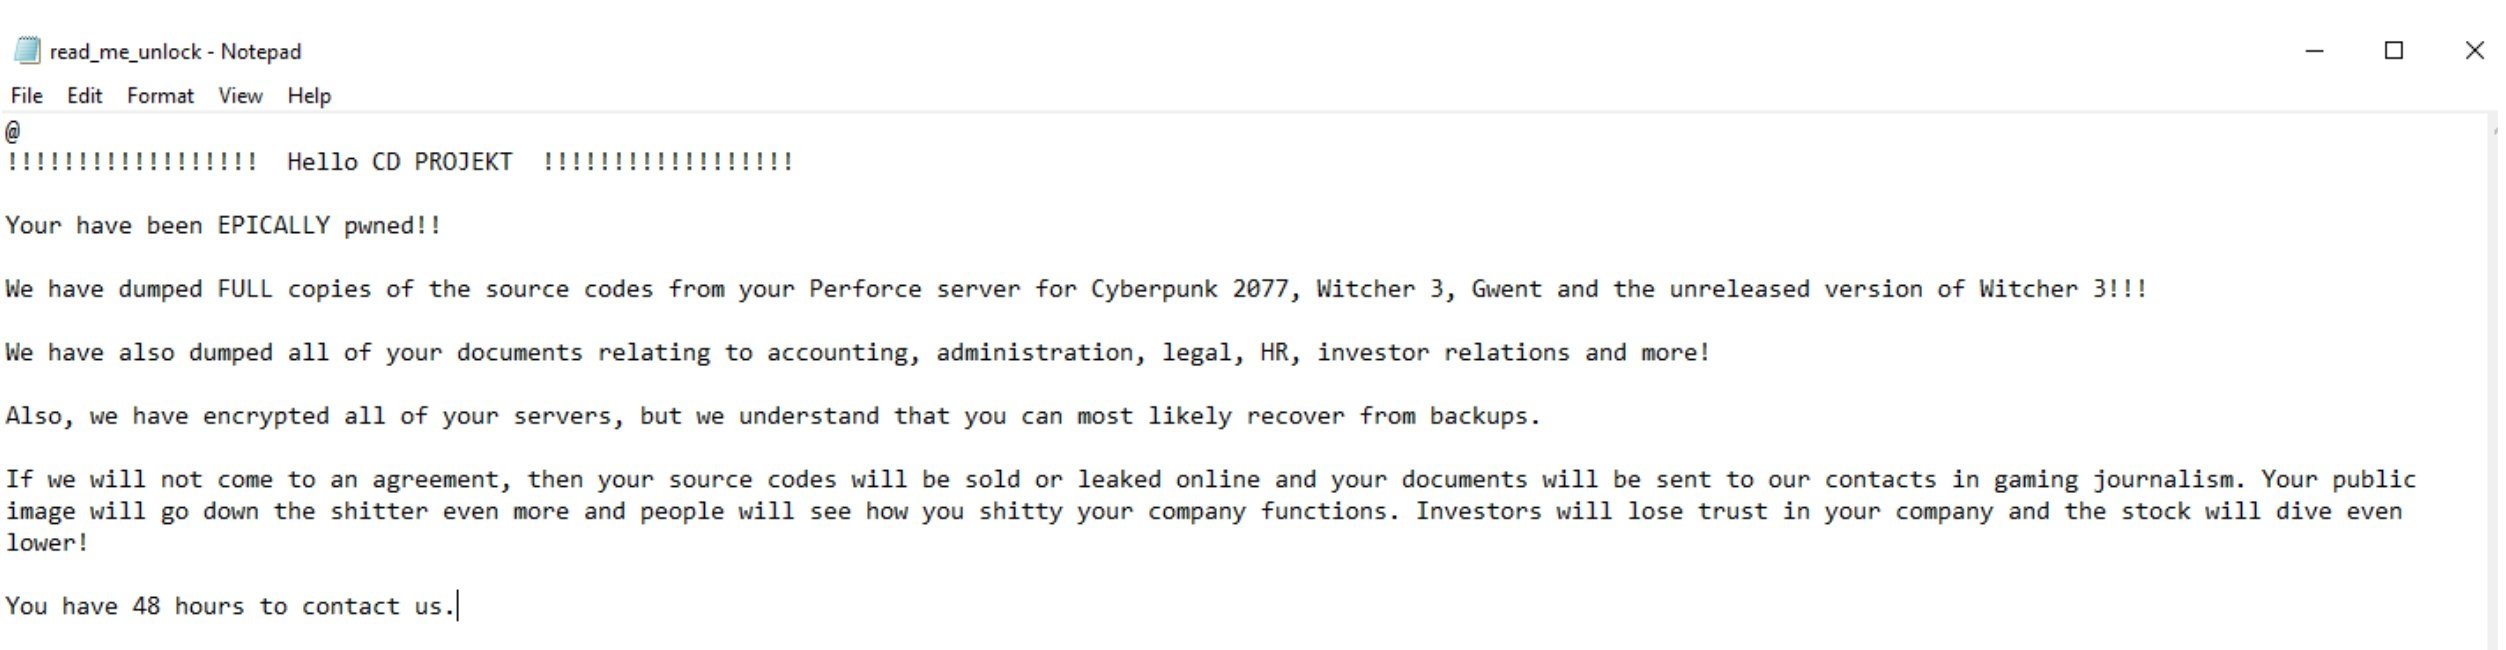 mensagem do ataque ransomware